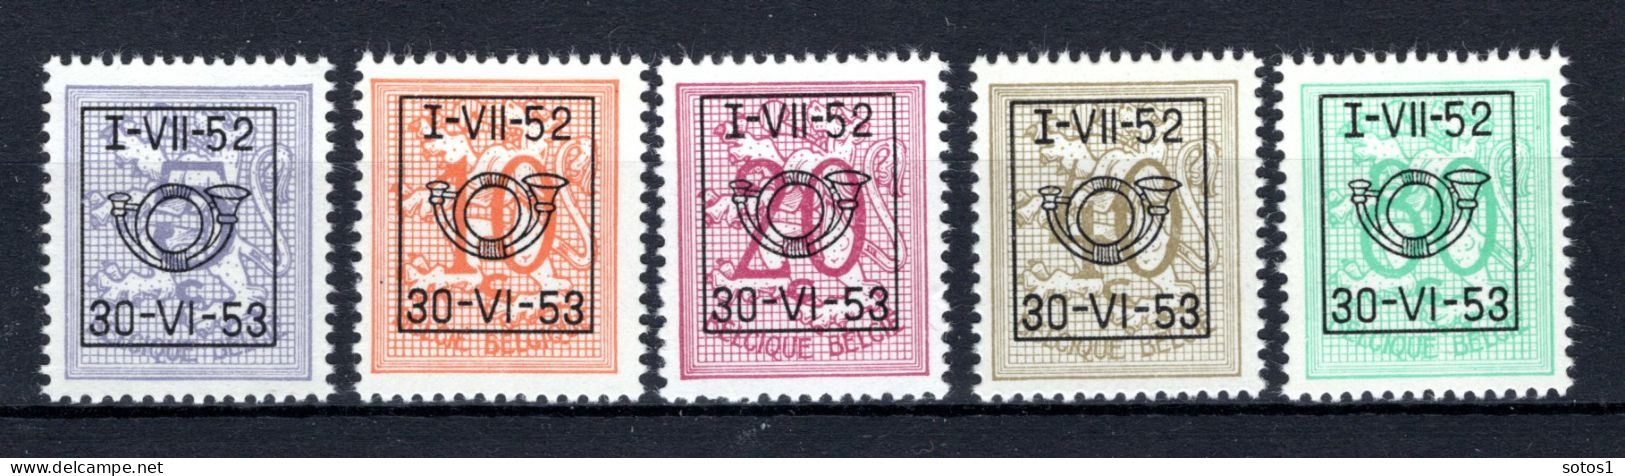 PRE625/629 MNH** 1952 - Cijfer Op Heraldieke Leeuw Type D - REEKS 43  - Typografisch 1951-80 (Cijfer Op Leeuw)